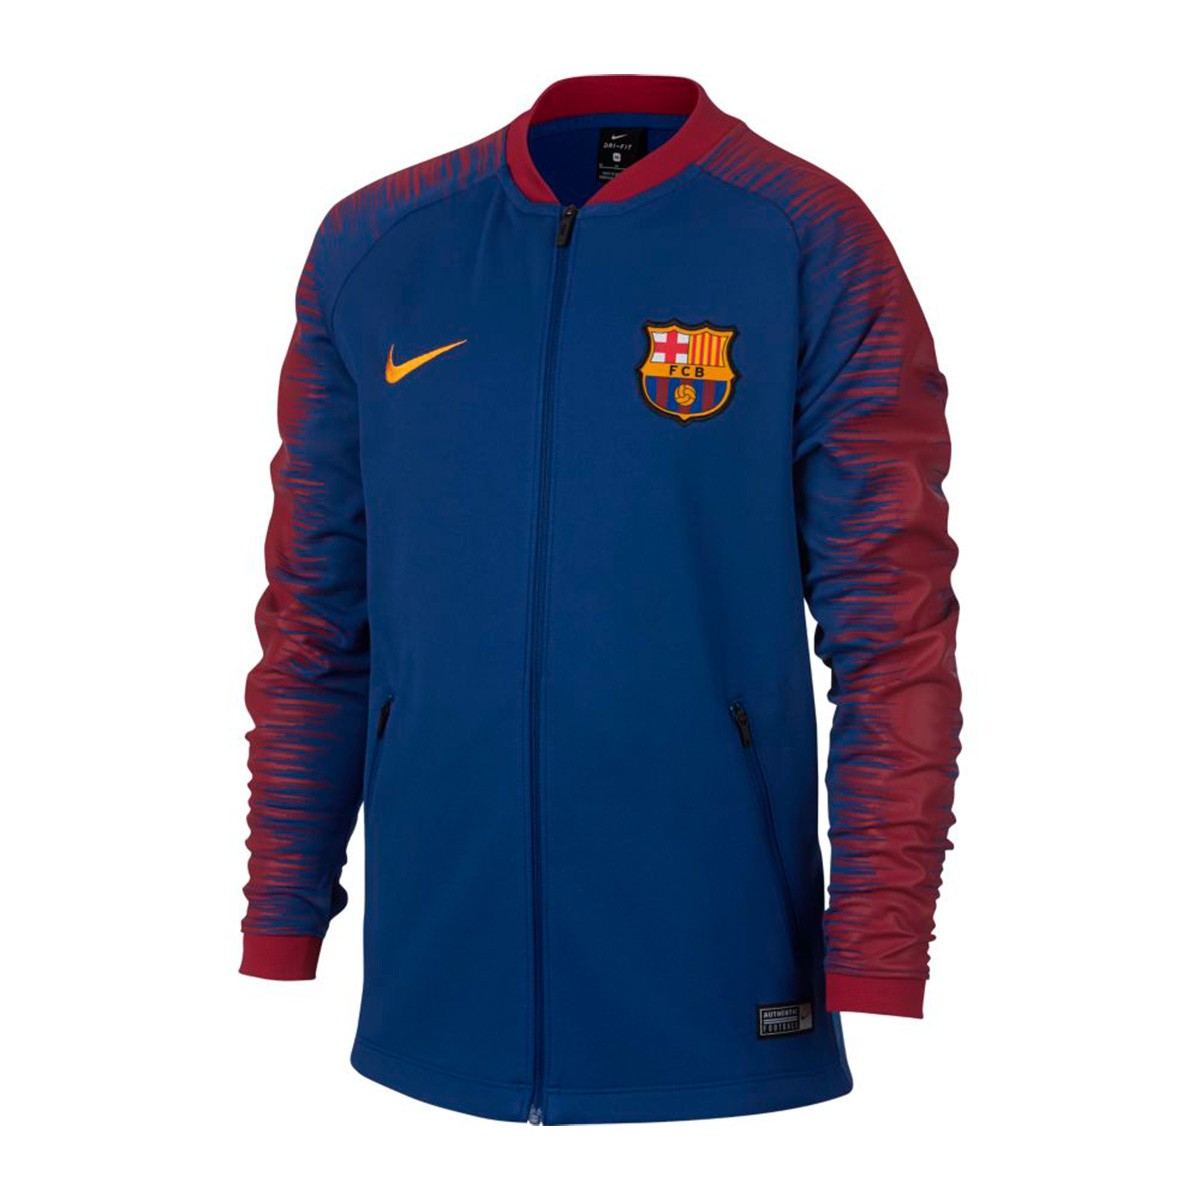 fc barcelona pre match jersey 2019